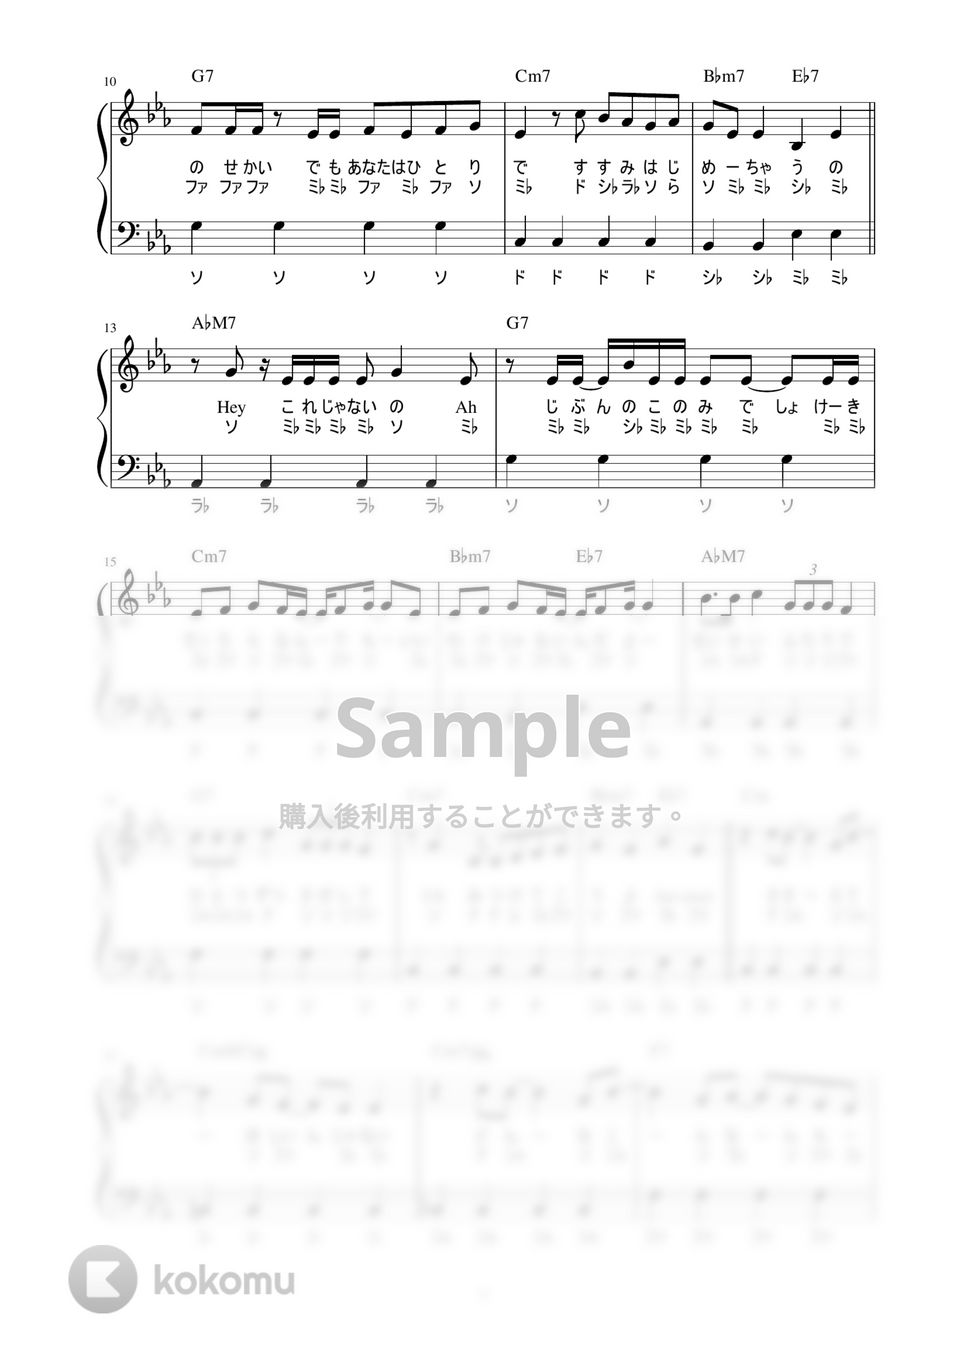 NiziU - LOOK AT ME (かんたん / 歌詞付き / ドレミ付き / 初心者) by piano.tokyo